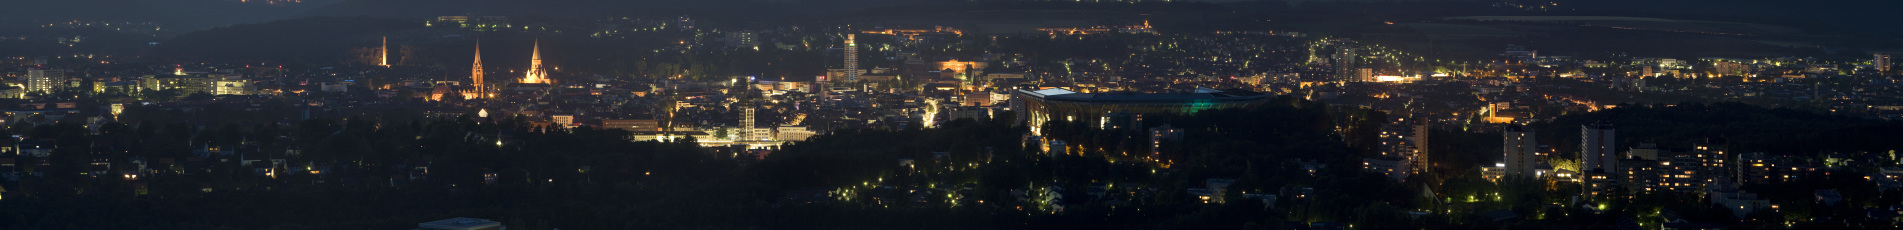 Panorama über Kaiserslautern bei Nacht.